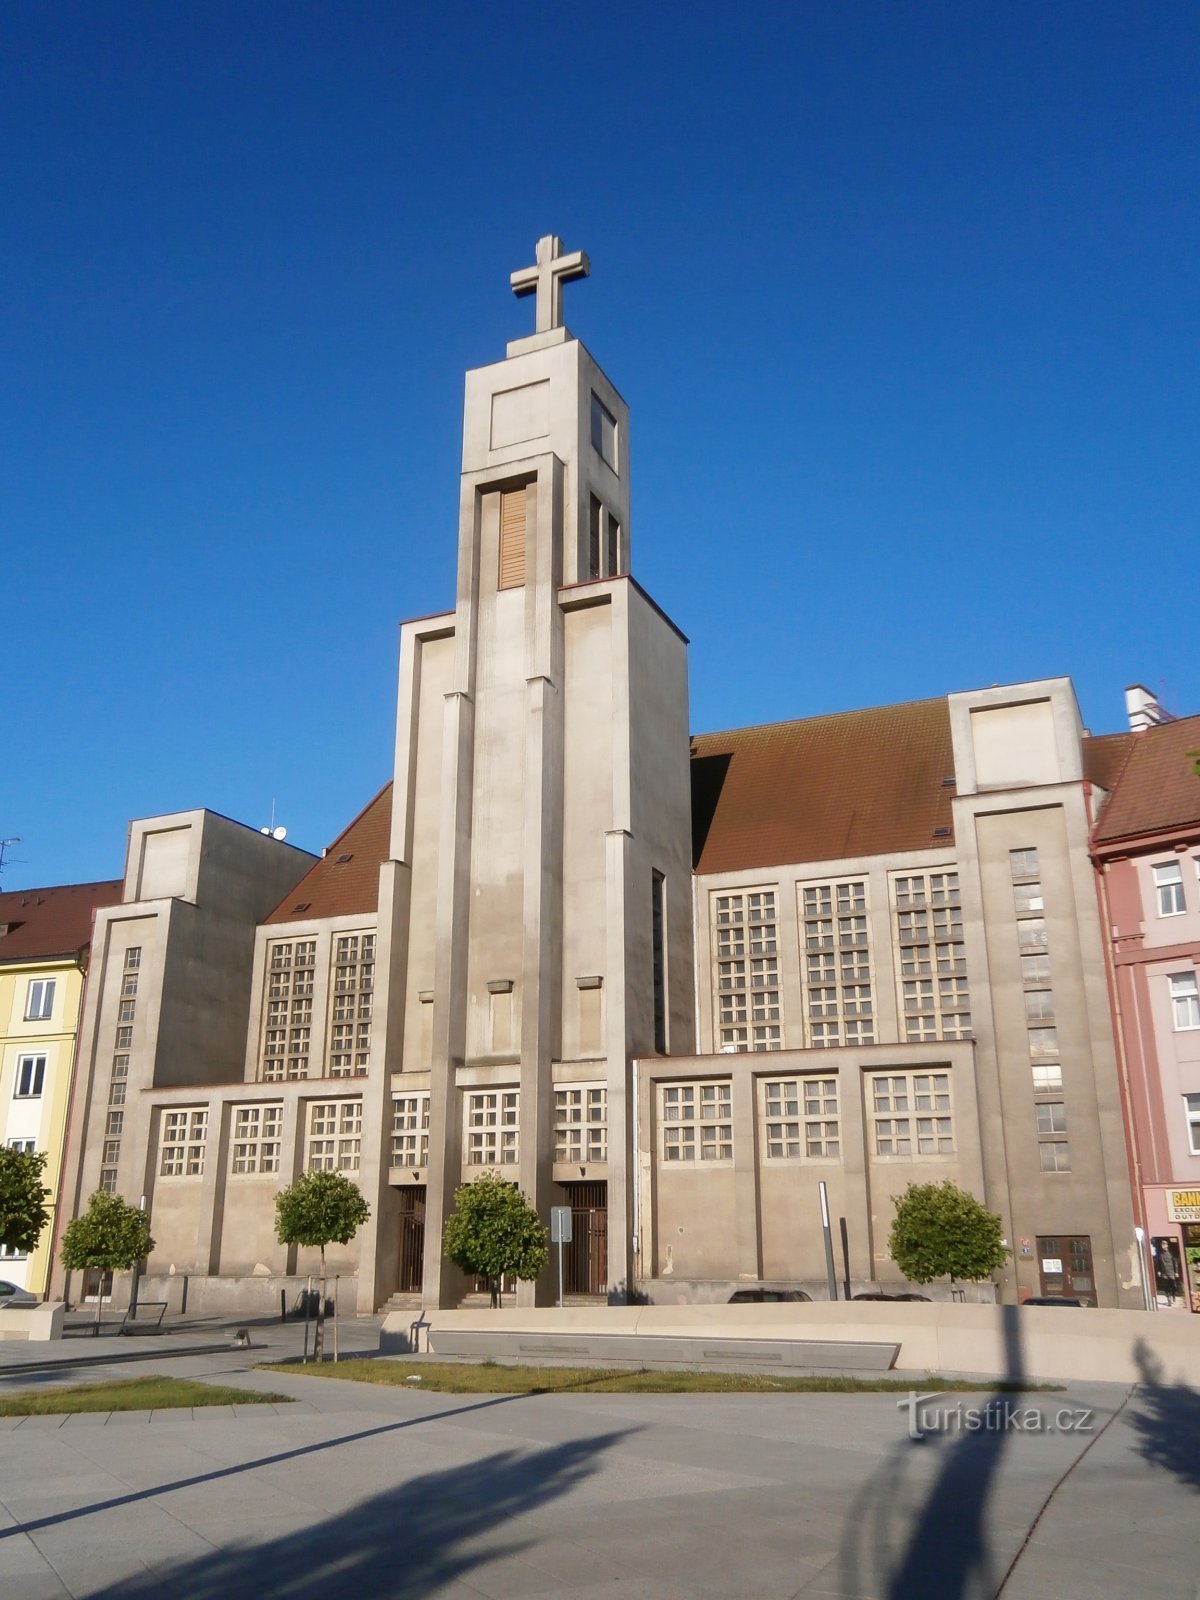 Church of the Divine Heart of the Lord (Hradec Králové, 25.6.2017/XNUMX/XNUMX)